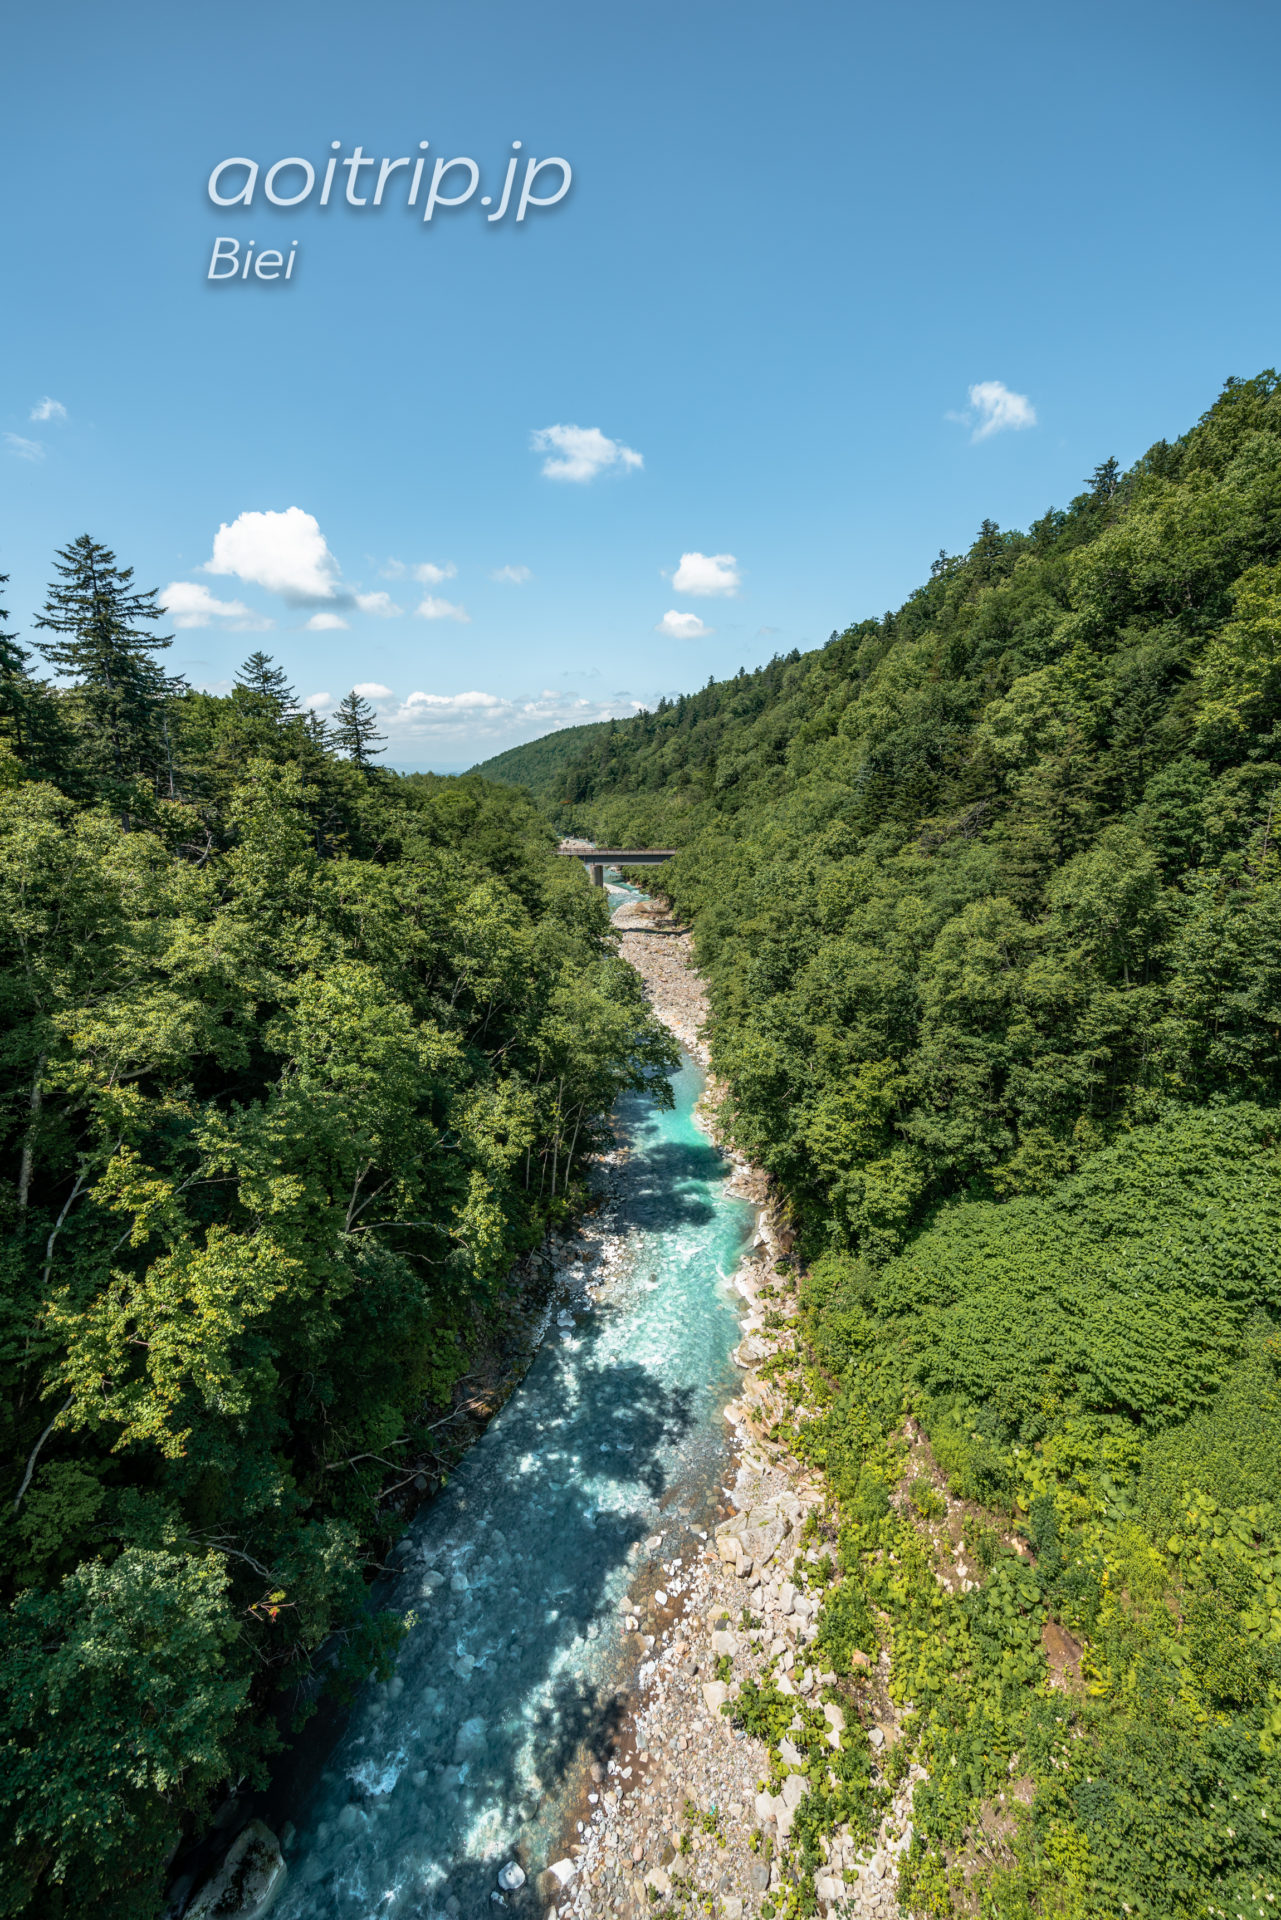 美瑛町 白ひげの滝 Shirahige Falls, Biei